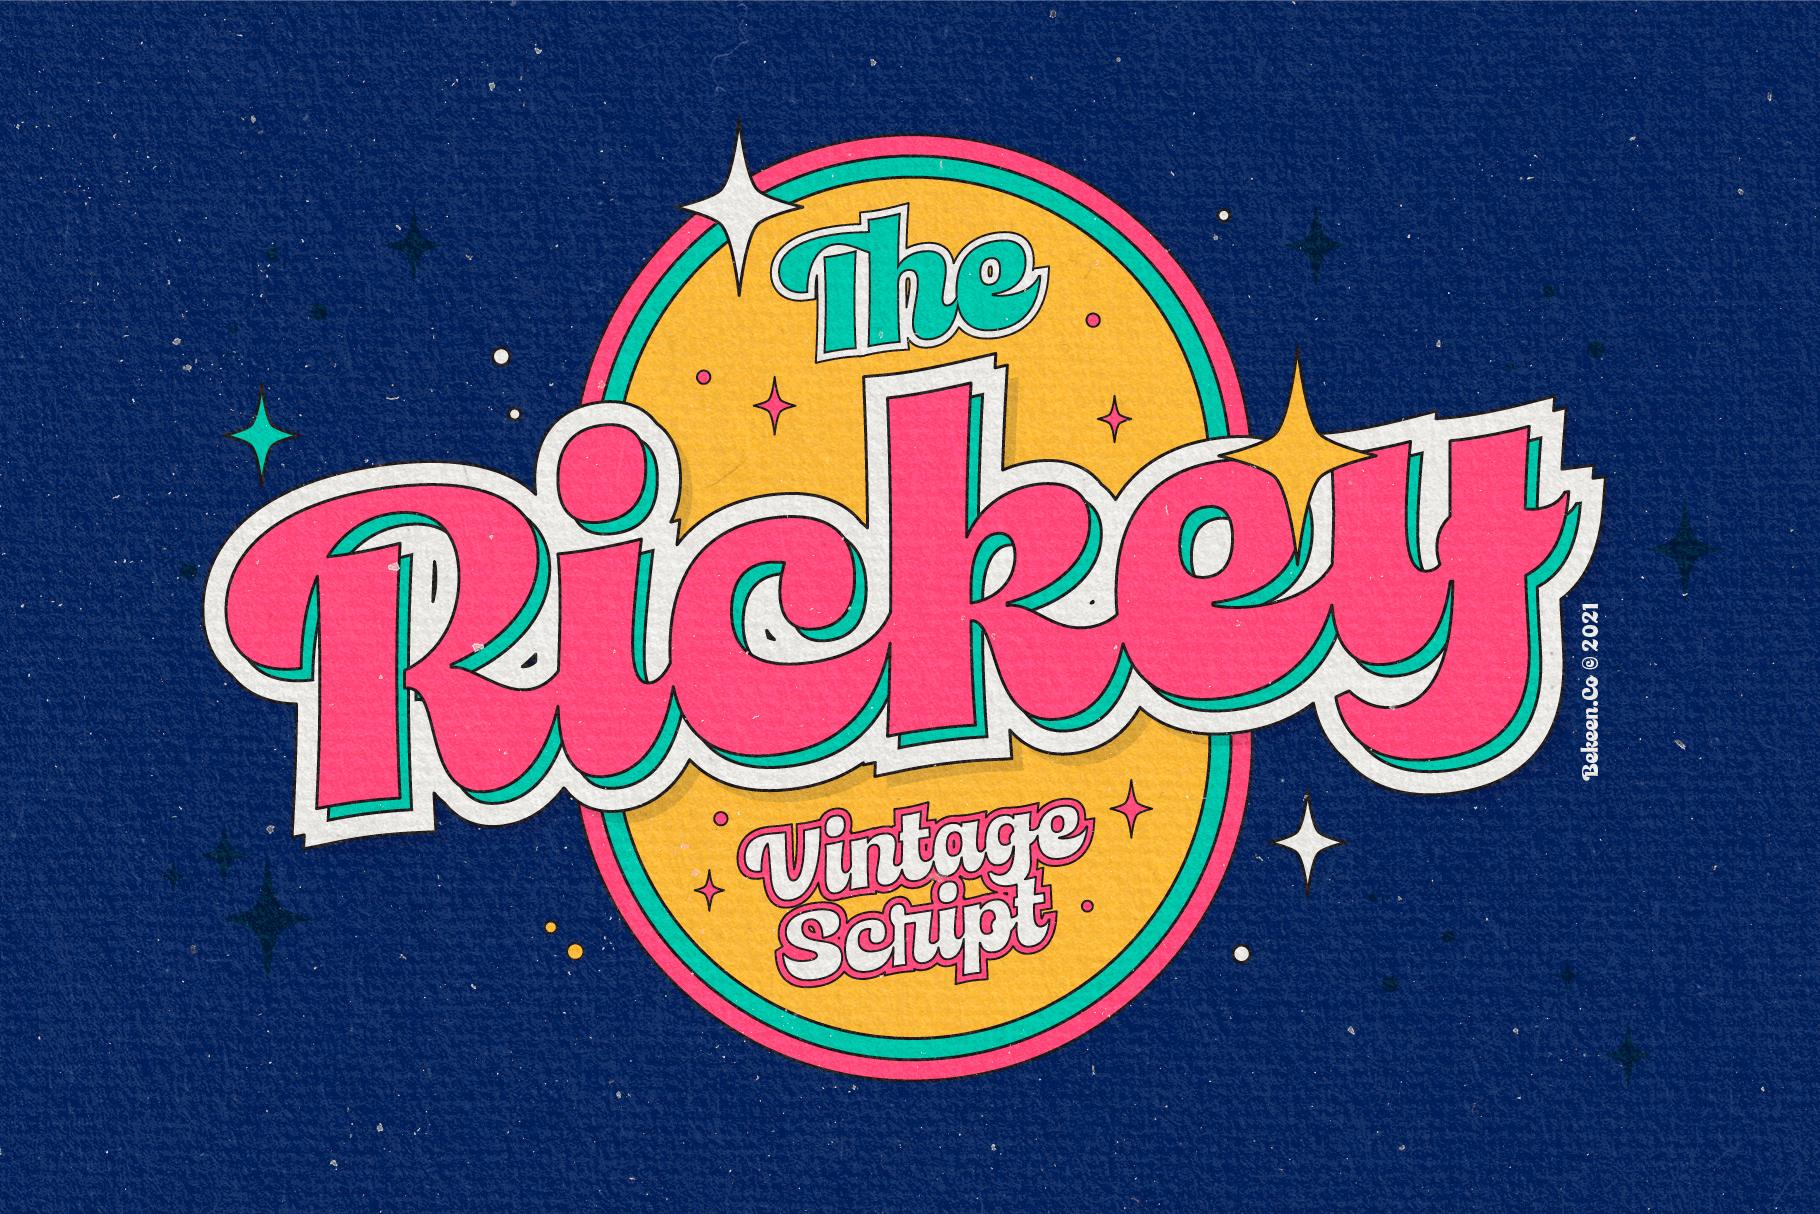 Rickey Font